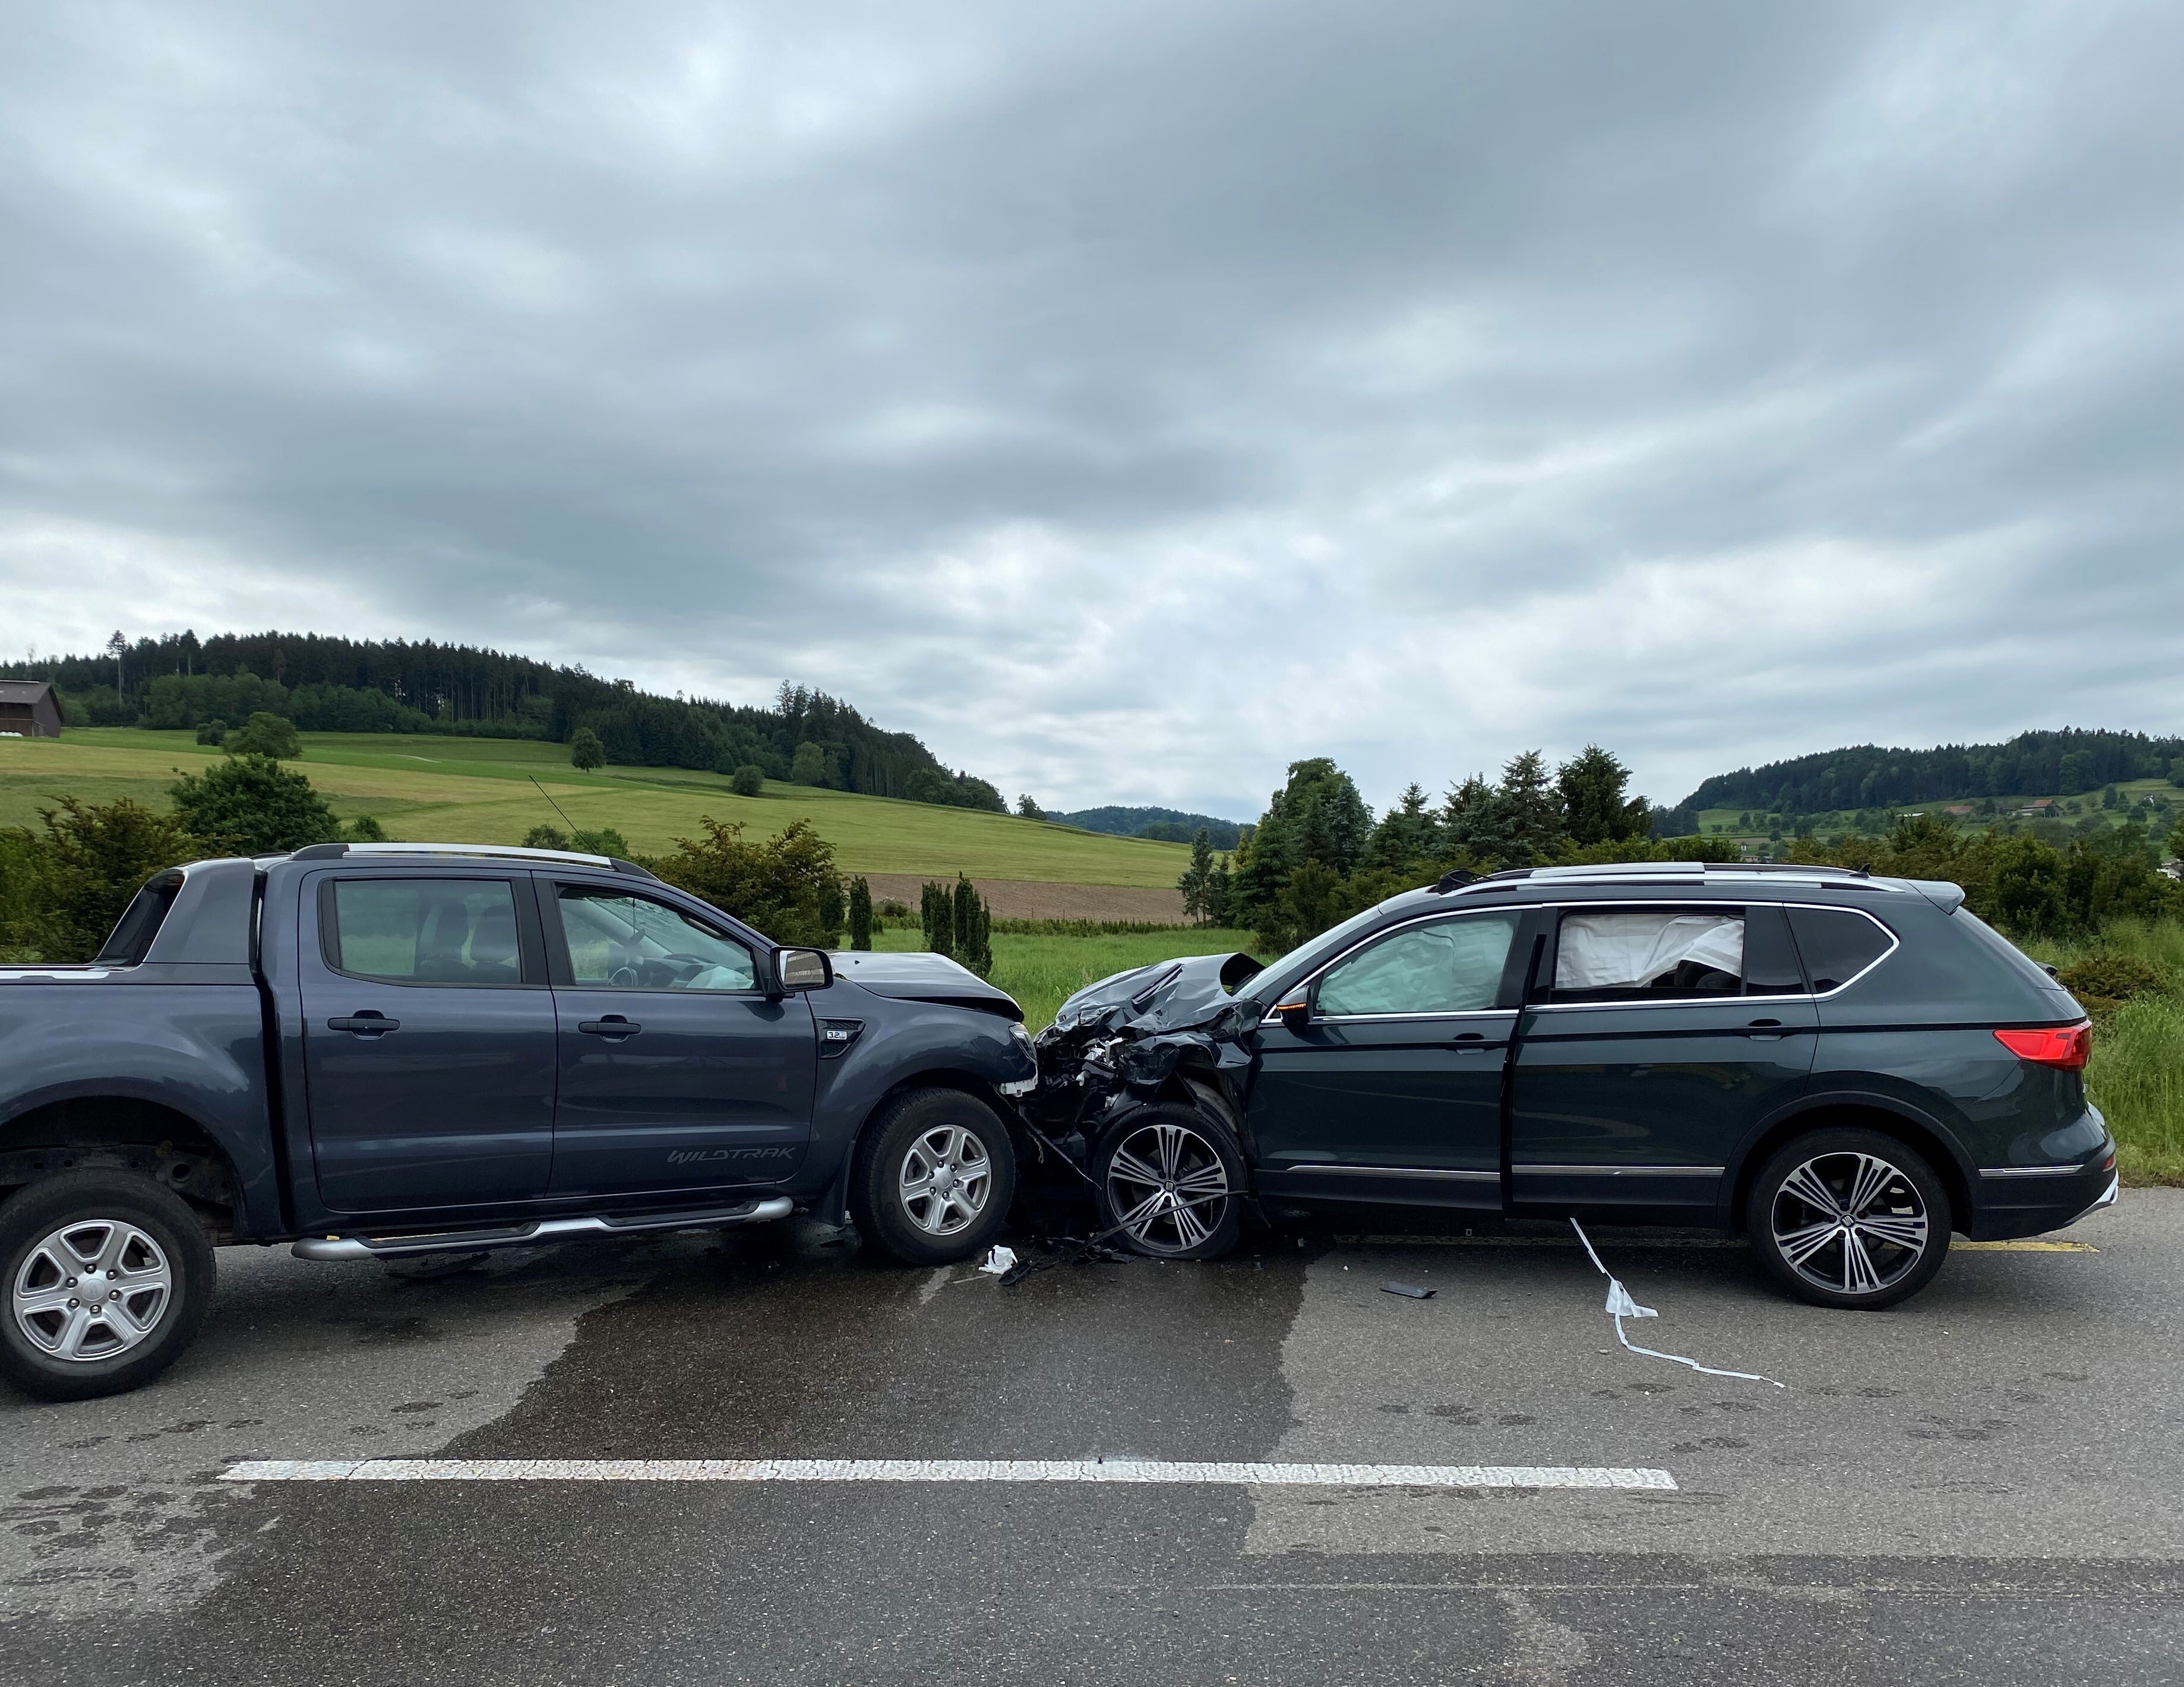 Busswil Frontalkollision Lieferwagen Auto schwer verletzt